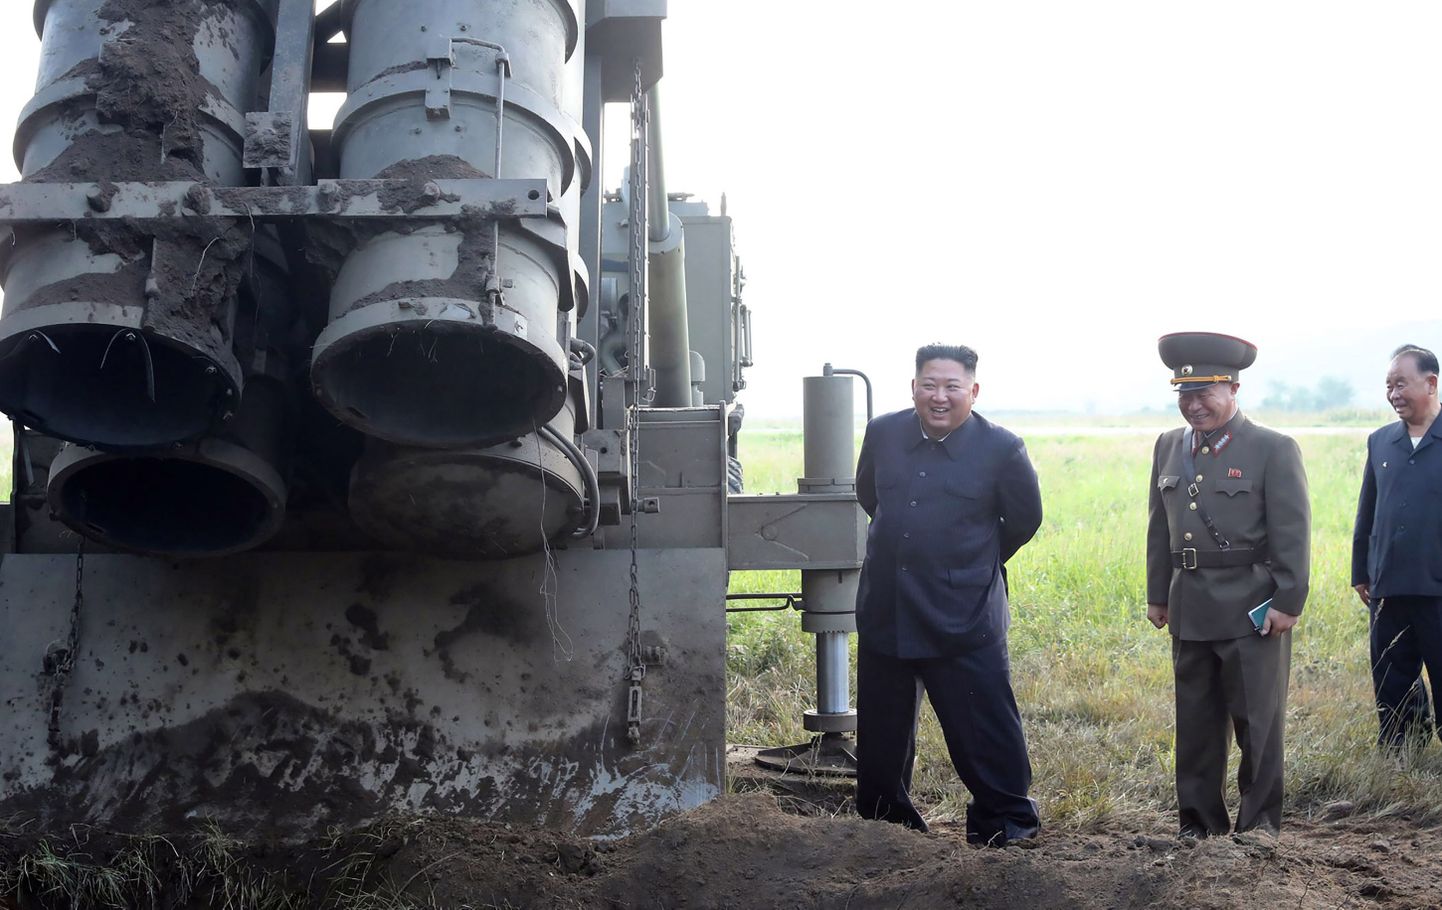 Põhja-Korea liider Kim Jong-un (raketiheitja kõrval) sellel 11. septembril avaldatud fotol ülisuure mitmelasulise raketiheitja kõrval, mida stalinistlik riik väidetavalt päev varem katsetas.